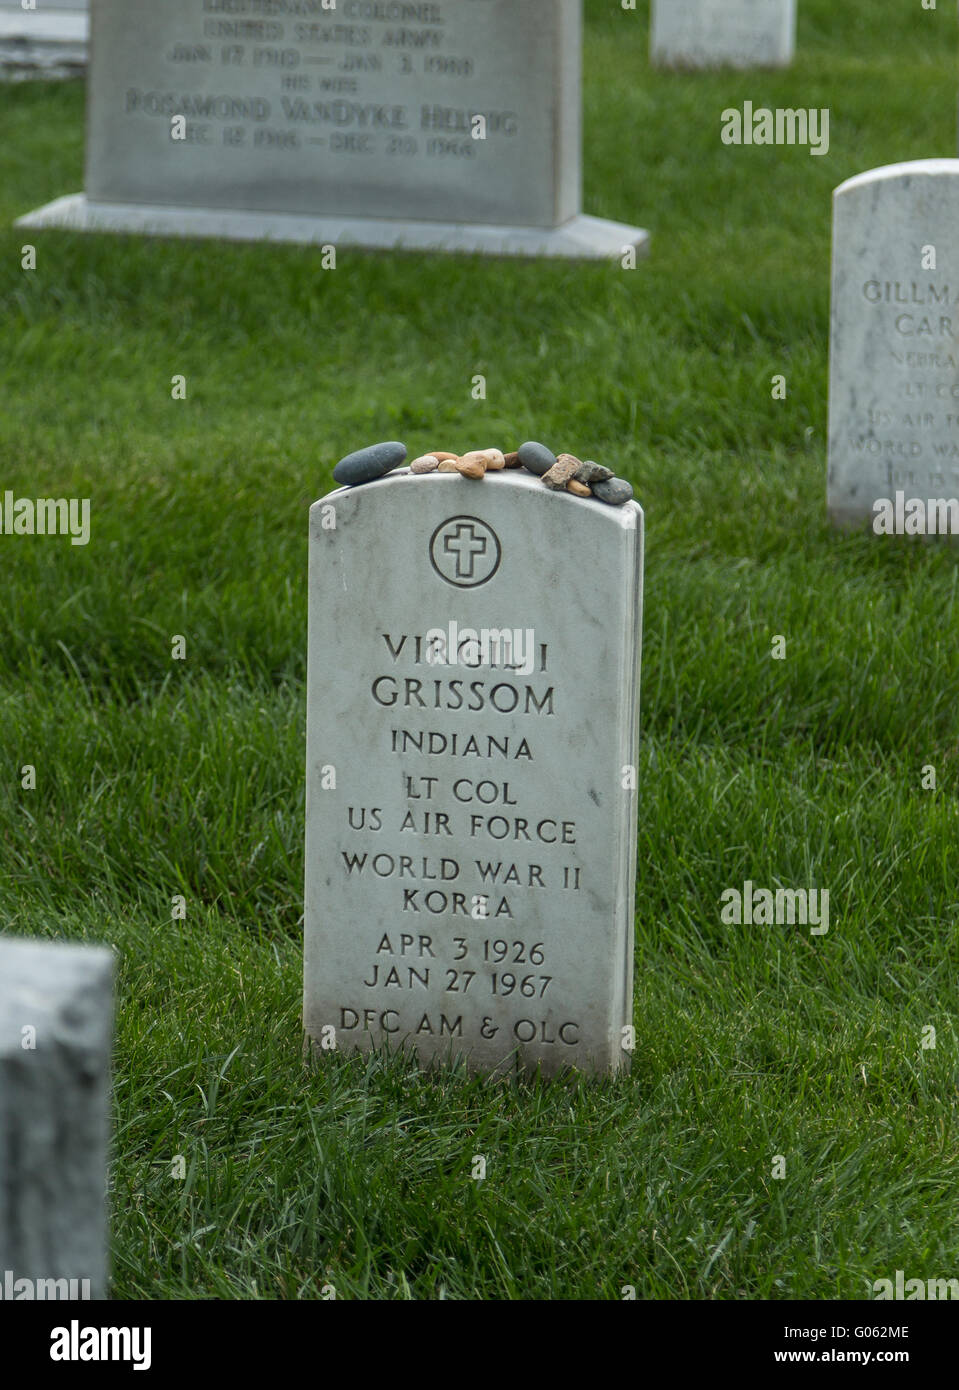 Tumba de Virgil "gus" Grissom, ex astronauta de la nasa, en el cementerio nacional de Arlington, Estados Unidos. Foto de stock